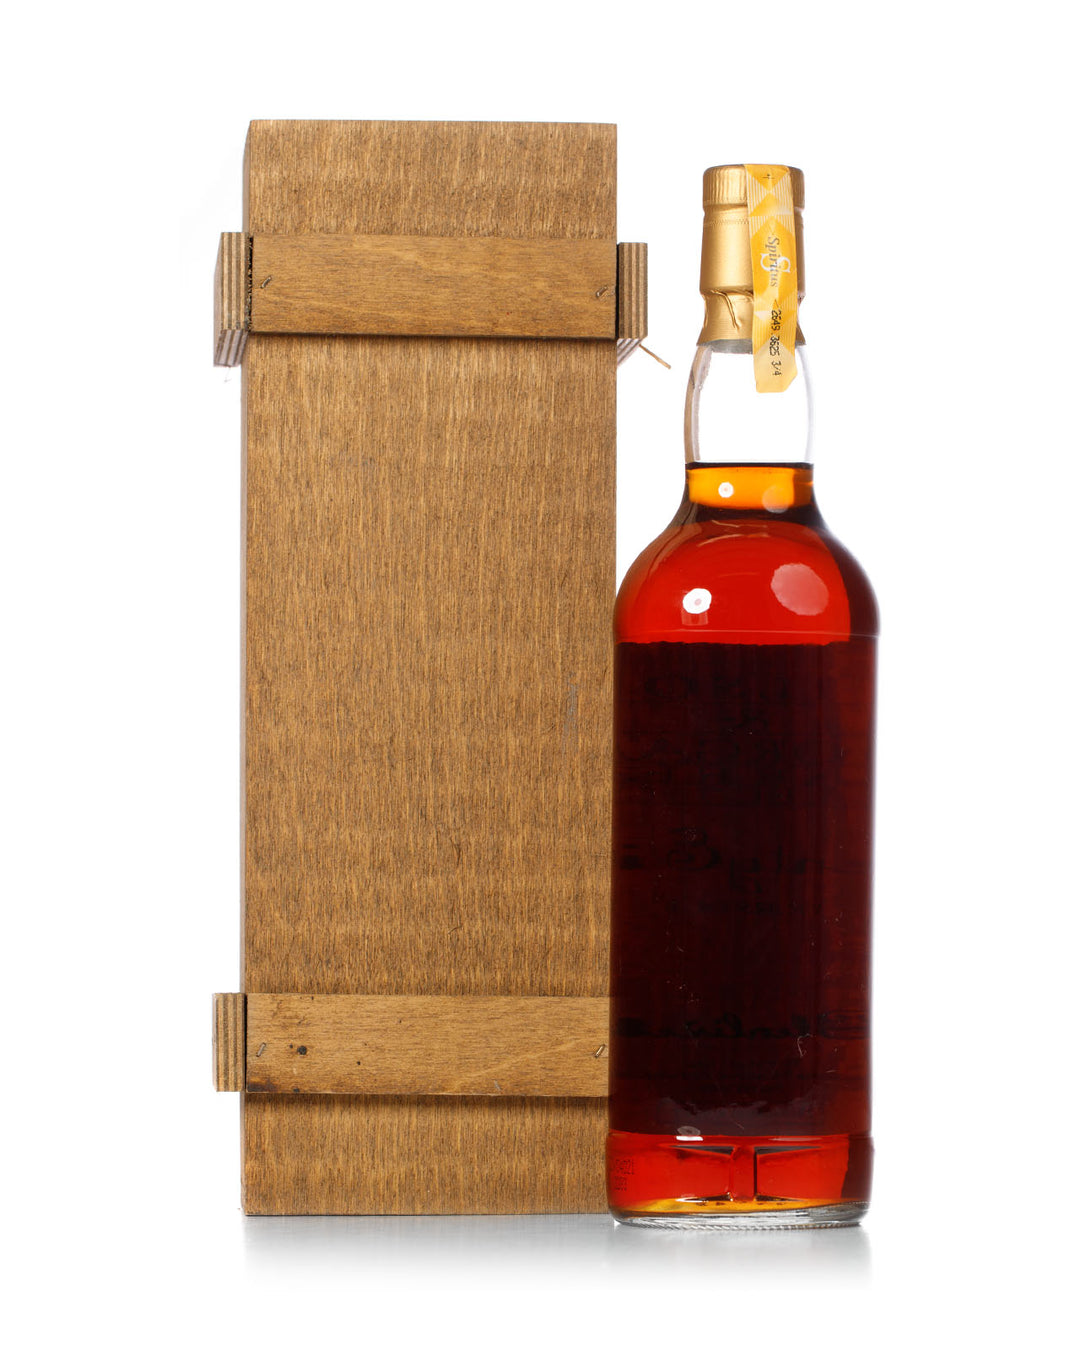 Glenlivet 1975 28 Year Old Wilson & Morgan Barrel Selection Bottled 2003 With Original Wood Box